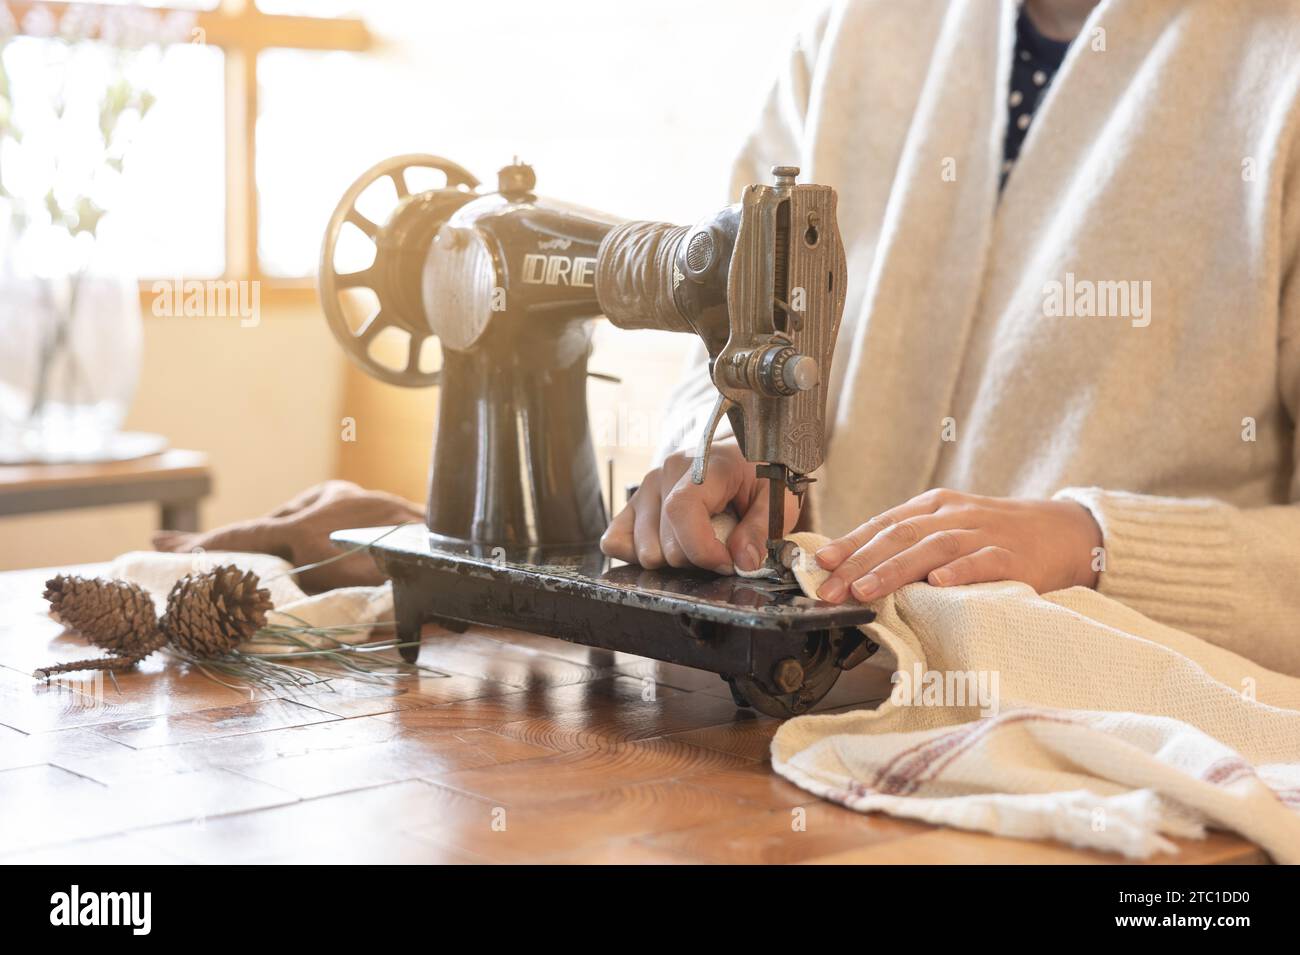 Vue intérieure d'une femme travaillant avec du tissu sur une machine à coudre vintage, par la fenêtre Banque D'Images